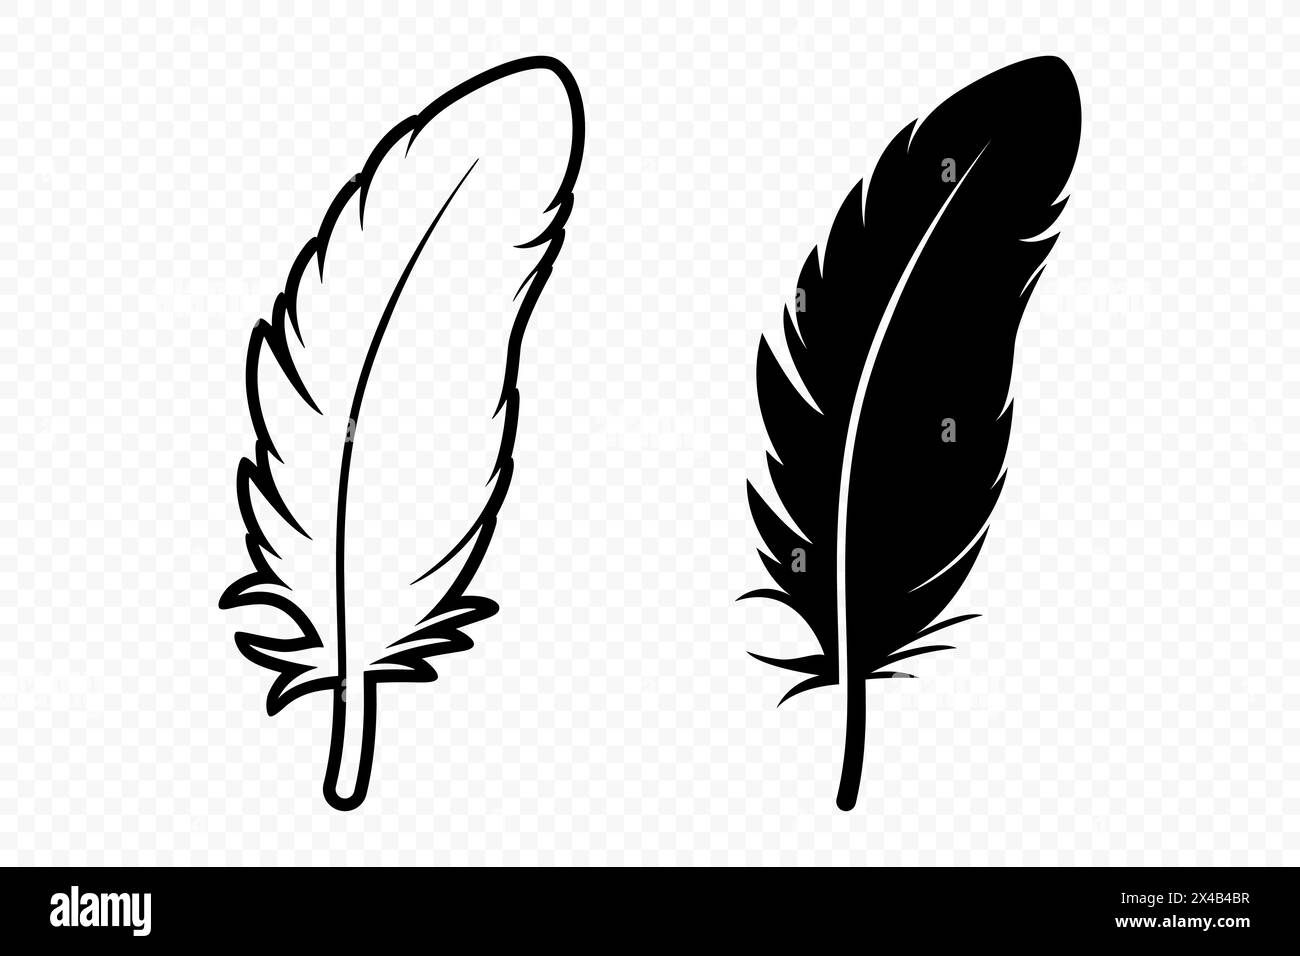 Vector Schwarz und weiß Logosymbole mit flauschigen Federn. Silhouette Feather Set Closeup Isoliert. Designvorlage für Flamingo, Engel, Vogelfeder. Leichtigkeit Stock Vektor